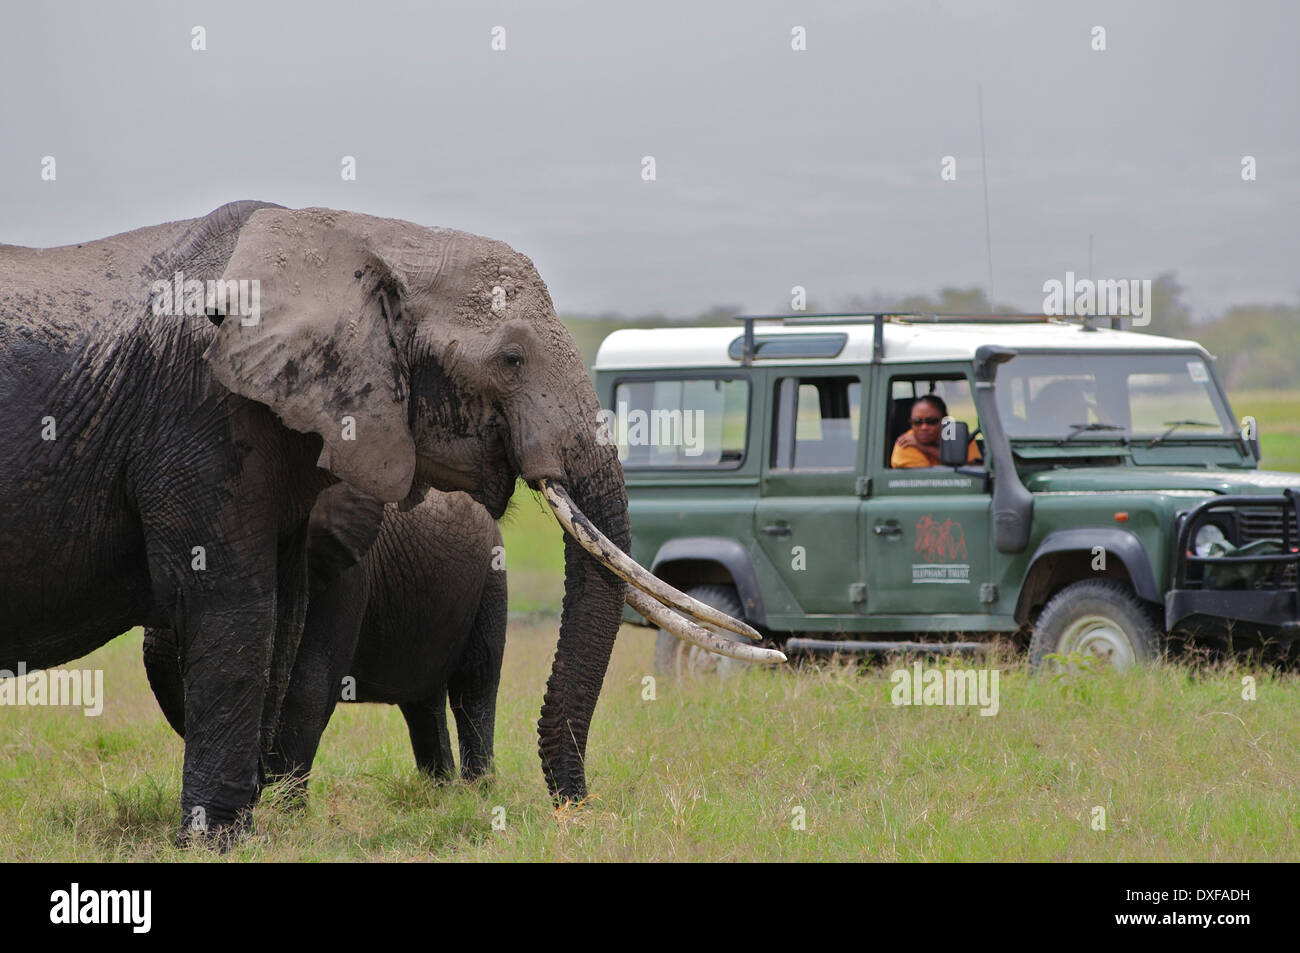 Famoso Elefante Africano, Echo, con las mujeres de confianza de Amboseli para elefantes estudiar su comportamiento. Kenya Amboseli Foto de stock